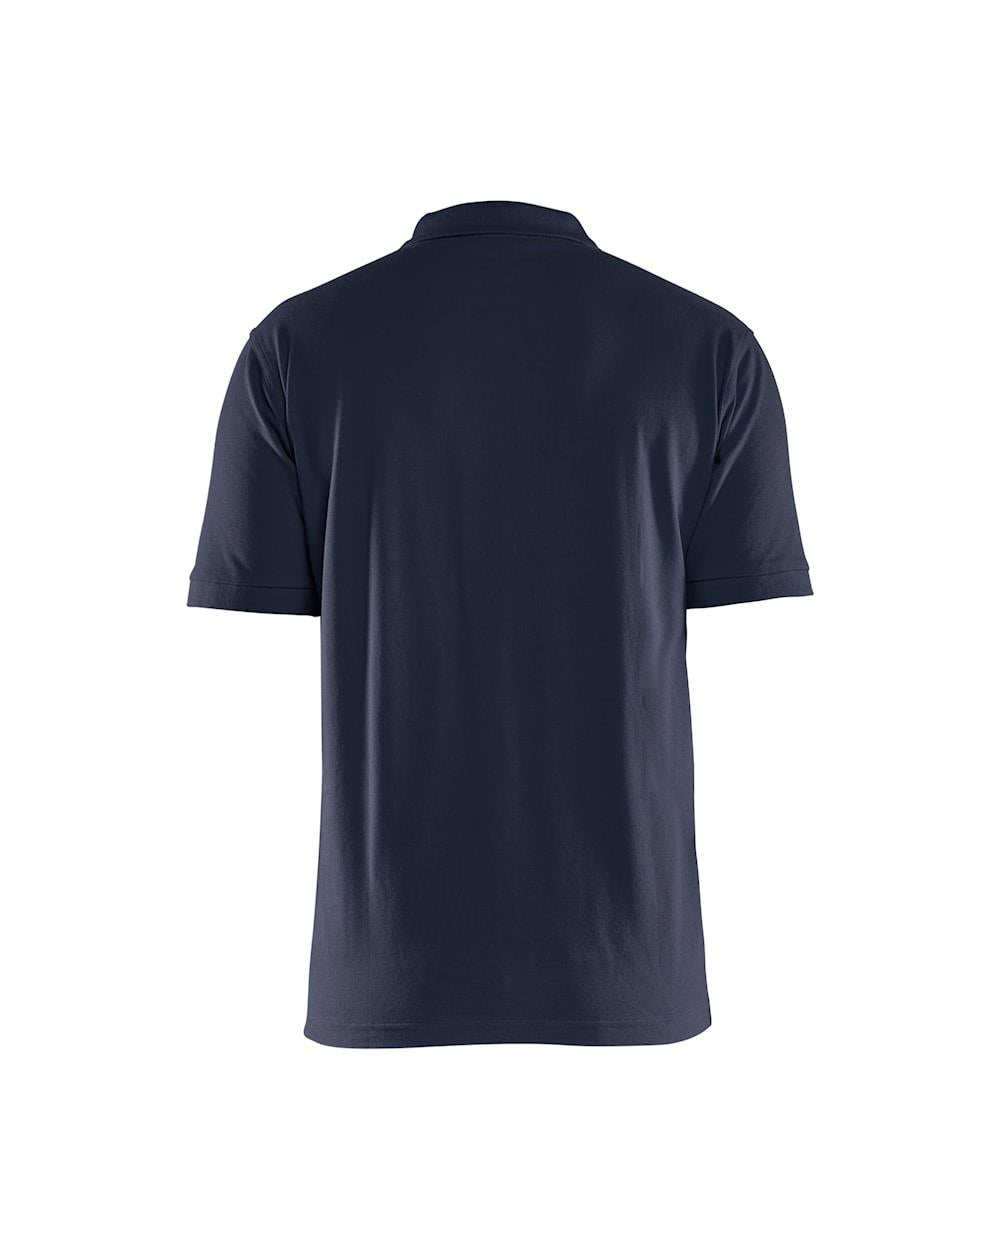 Blaklader dark navy men's cotton pique work polo-shirt #3435